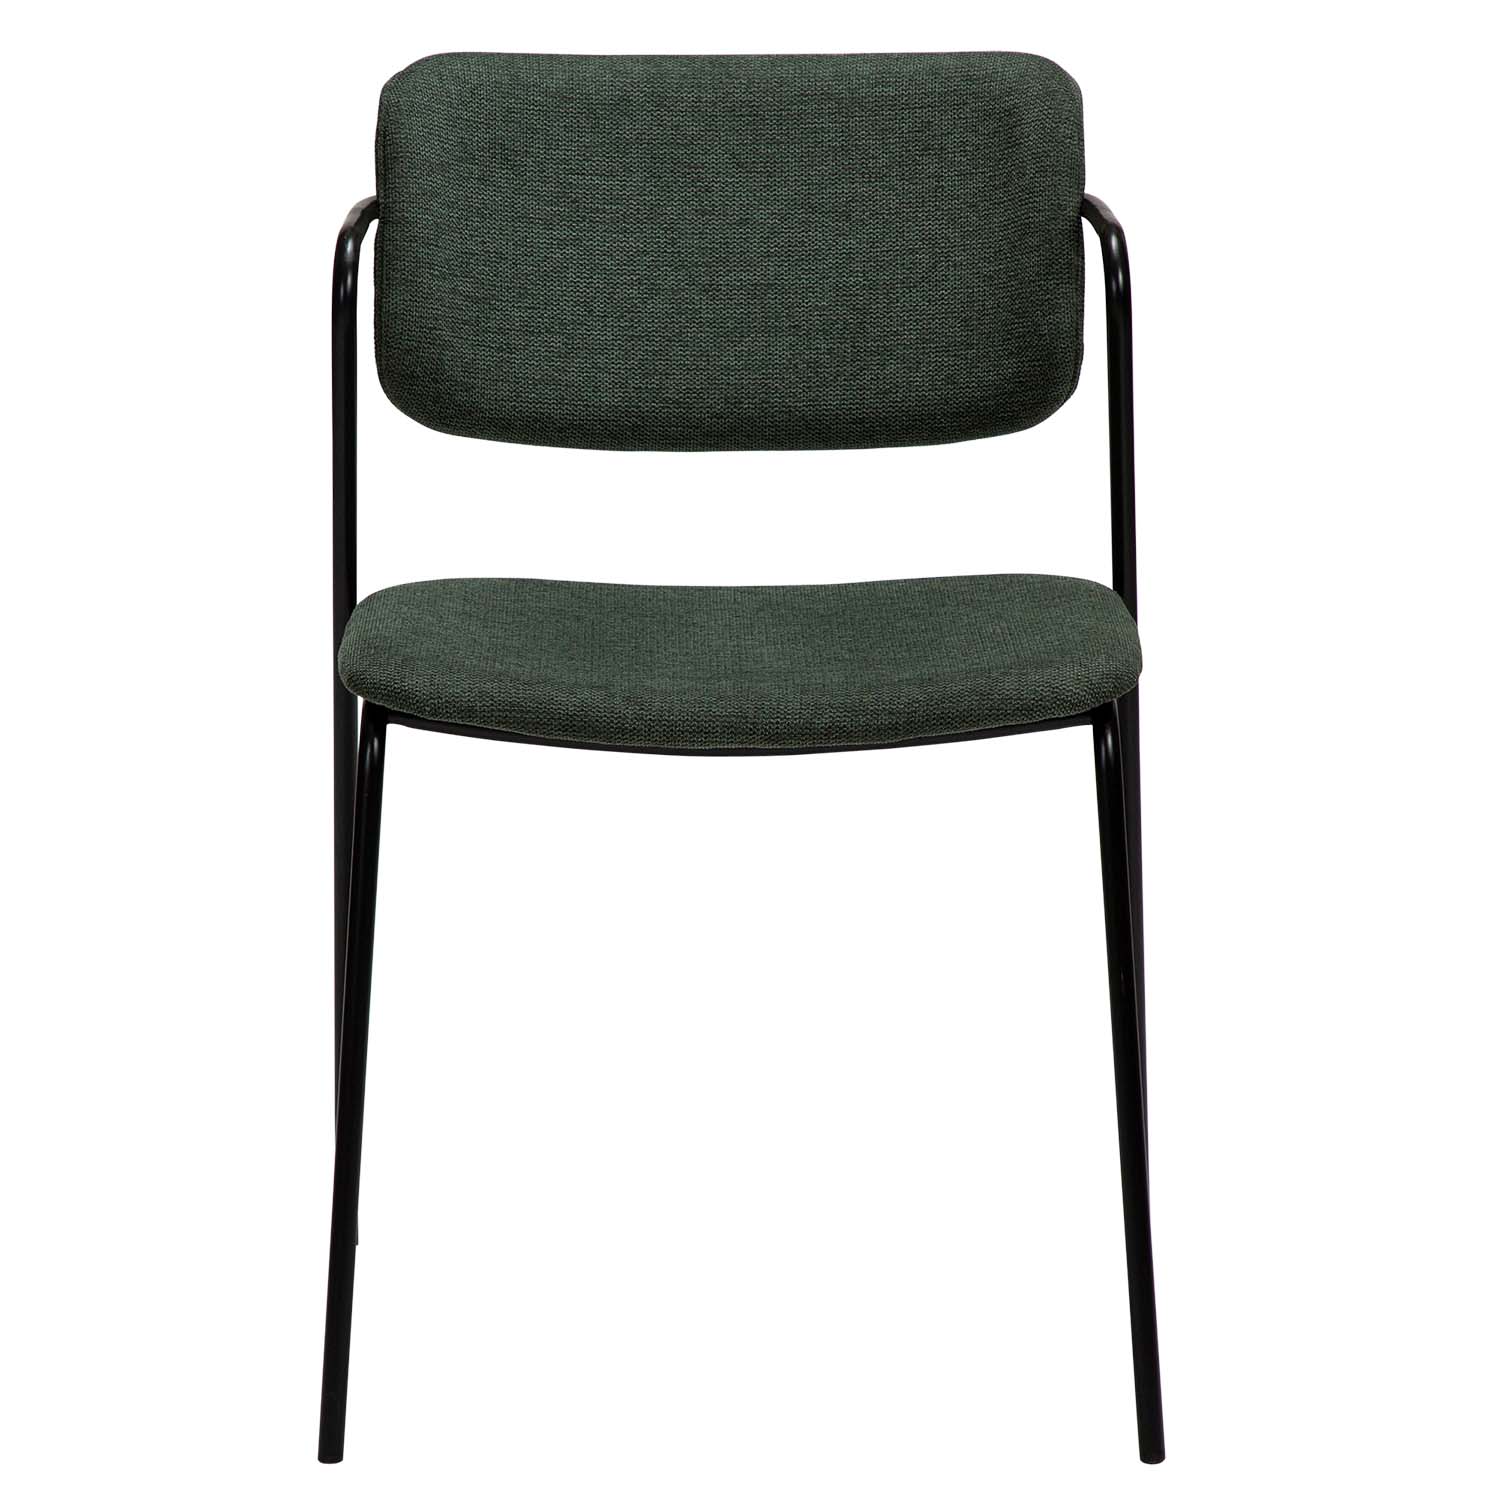 DAN-FORM Zed spisebordsstol, m. armlæn - grøn stof og sort metal